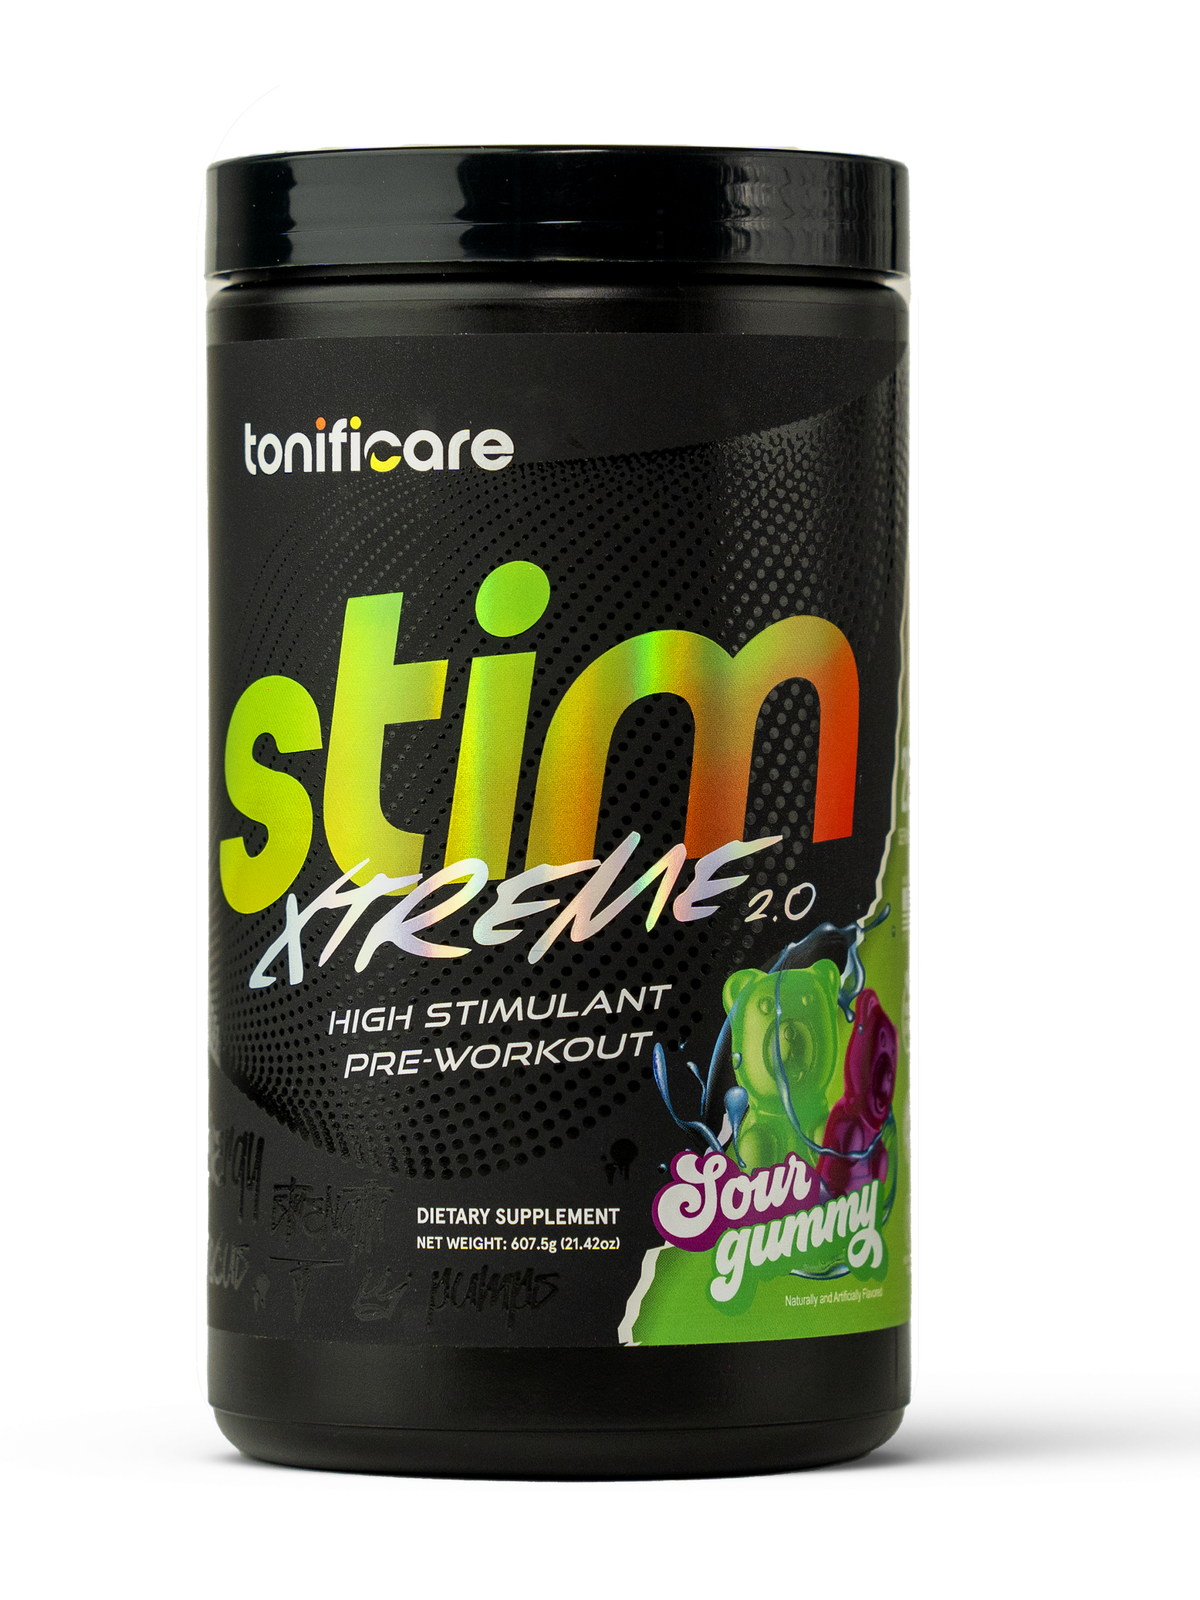 High Stimulant Pre-Workout Stim Xtreme 2.0 | Sour Gummy